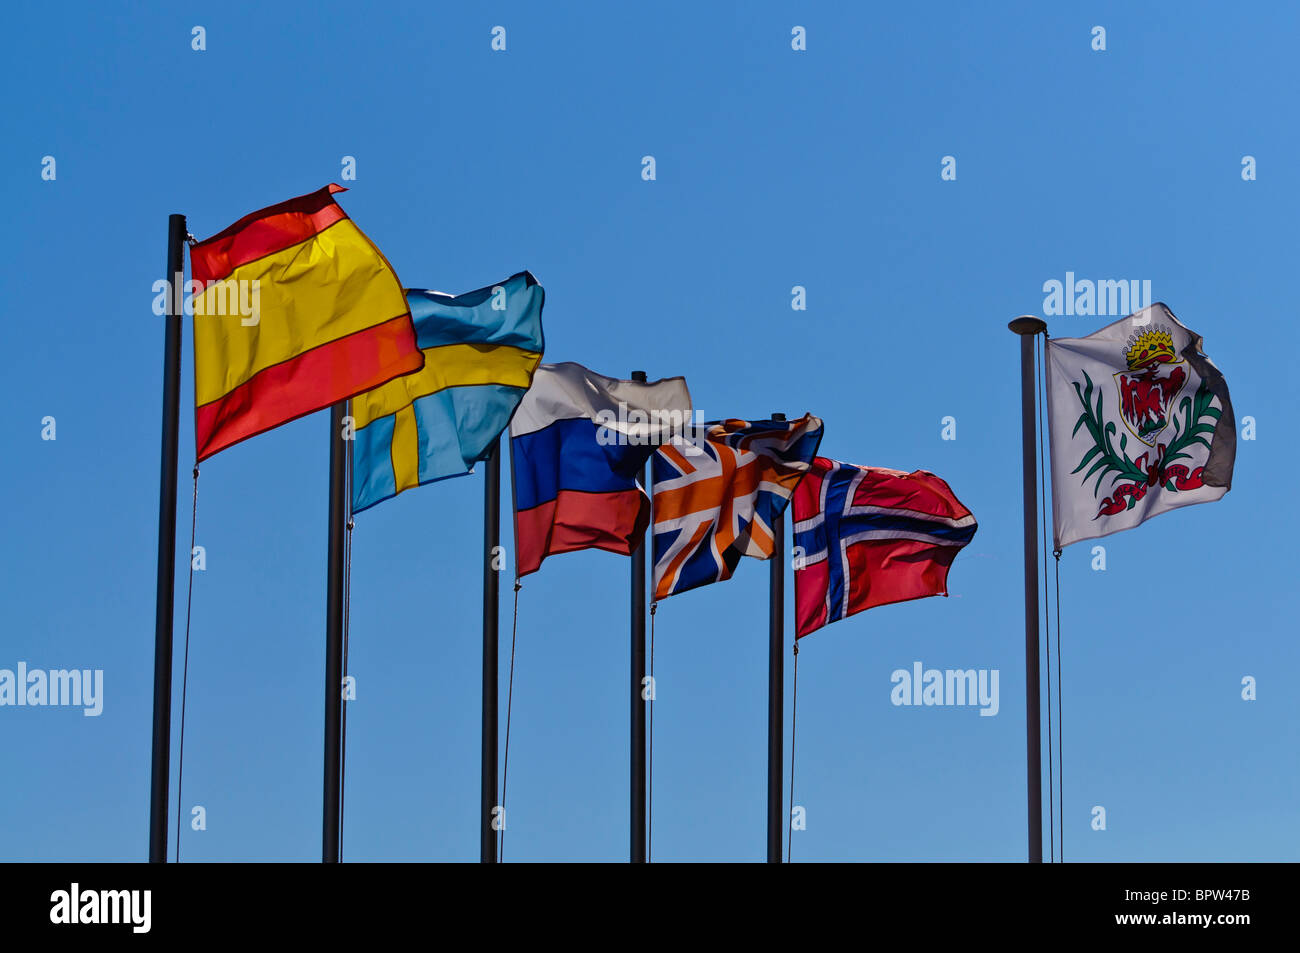 Flaggen von Spanien, Schweden, Russland, Großbritannien, Norwegen und die Fahne für schöne Hintergrundbeleuchtung von der Sonne. Stockfoto